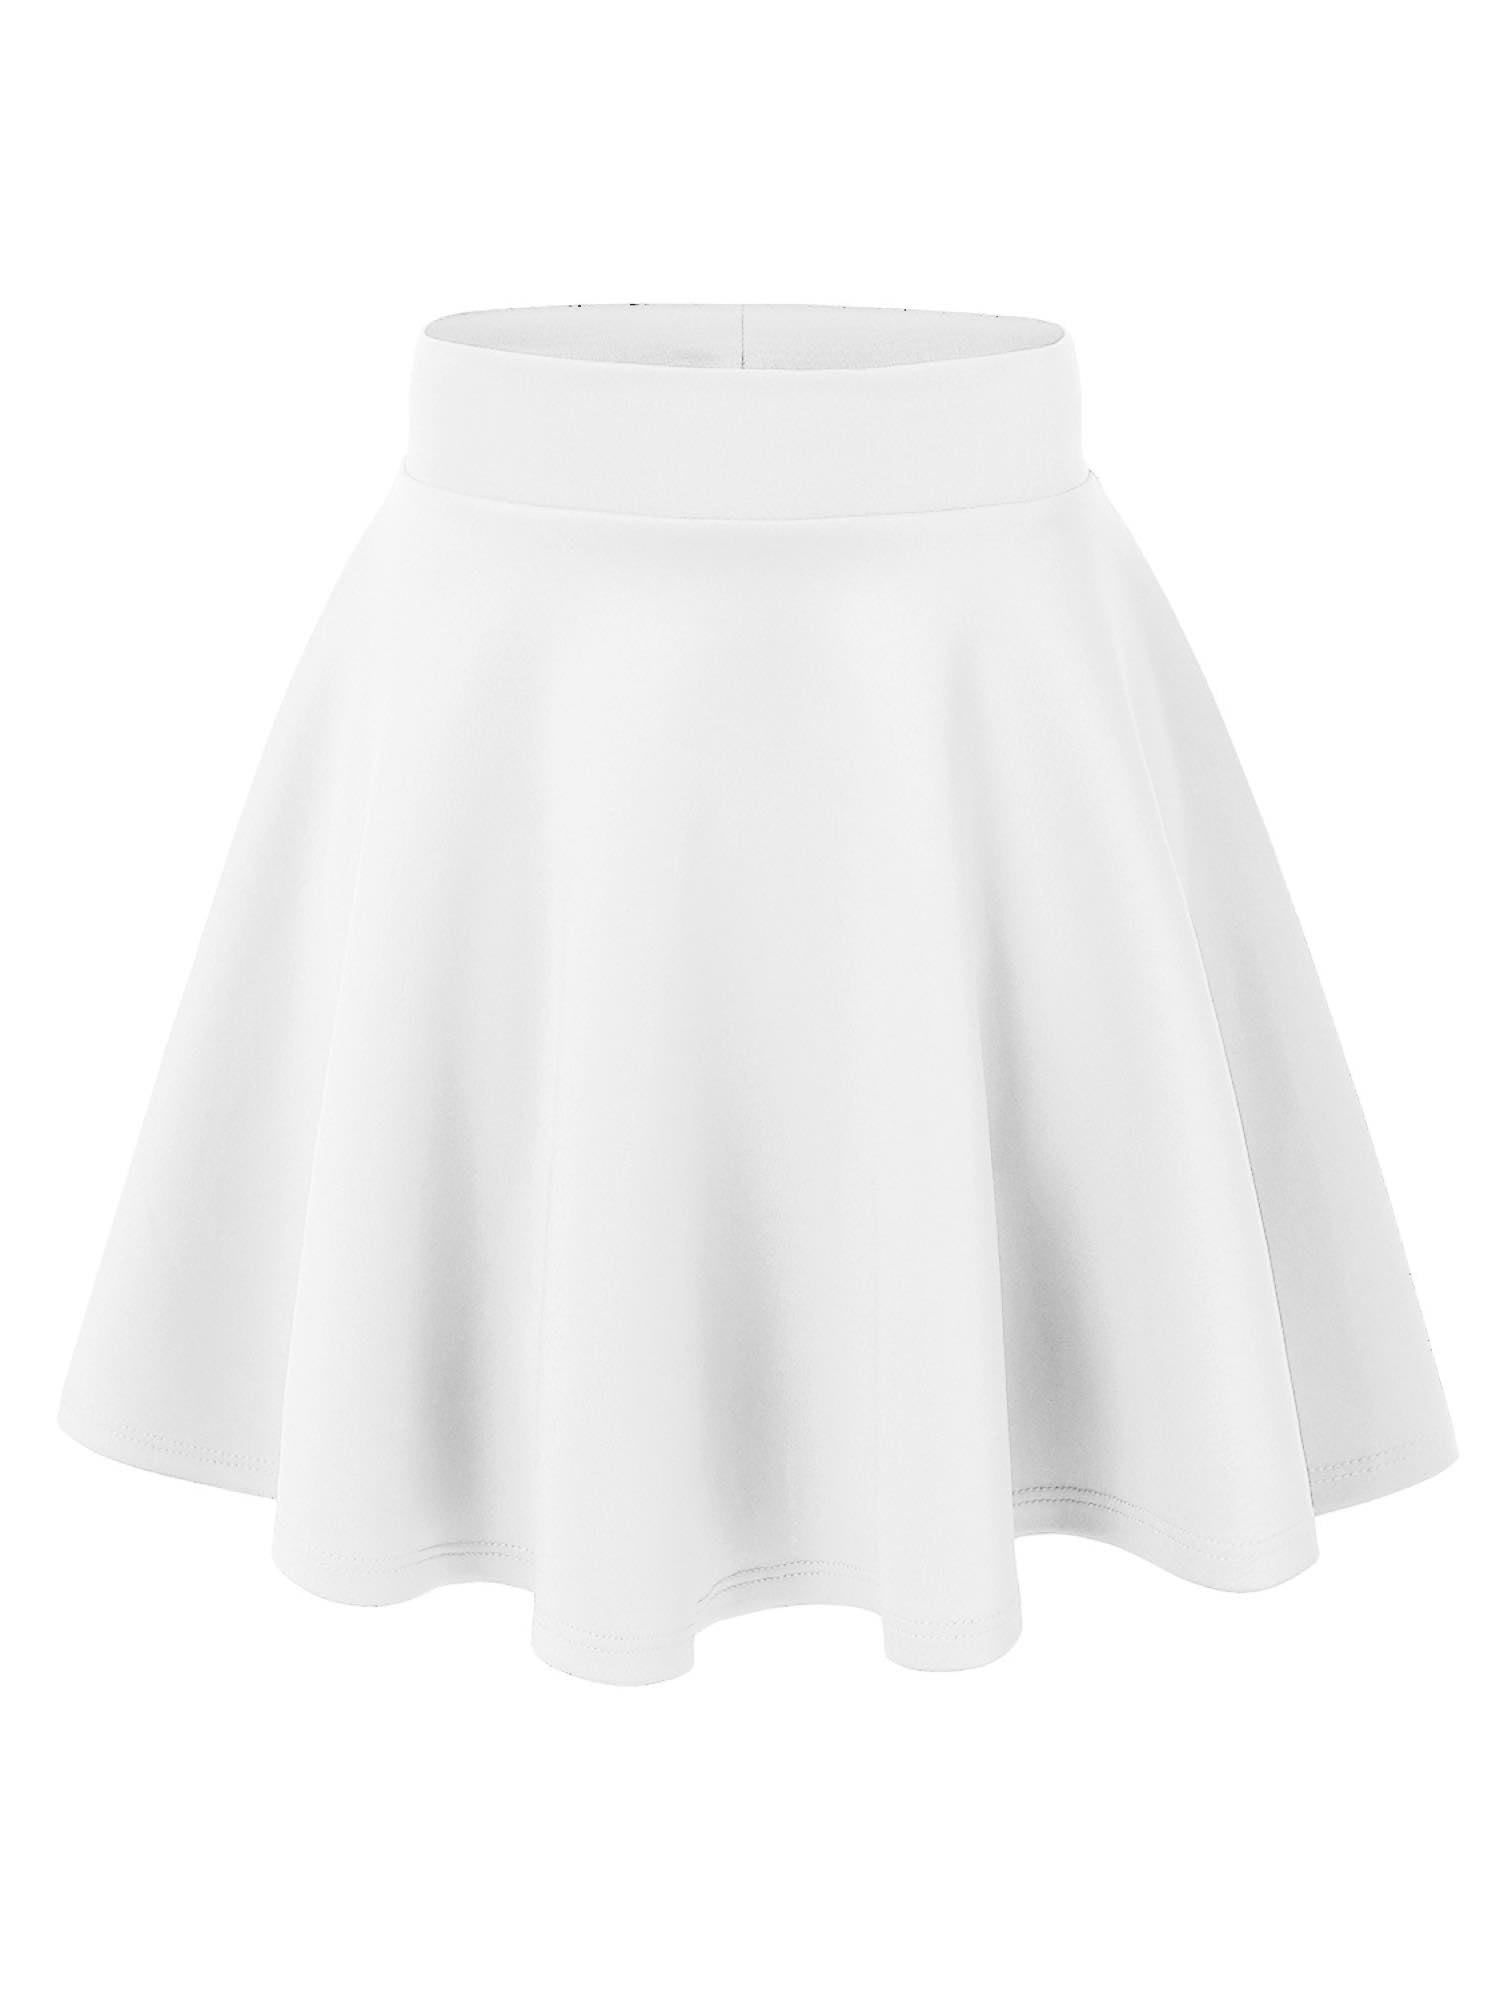 MBJ WB669 Womens Basic Versatile Strechy Flare Skater Skirt S WHITE